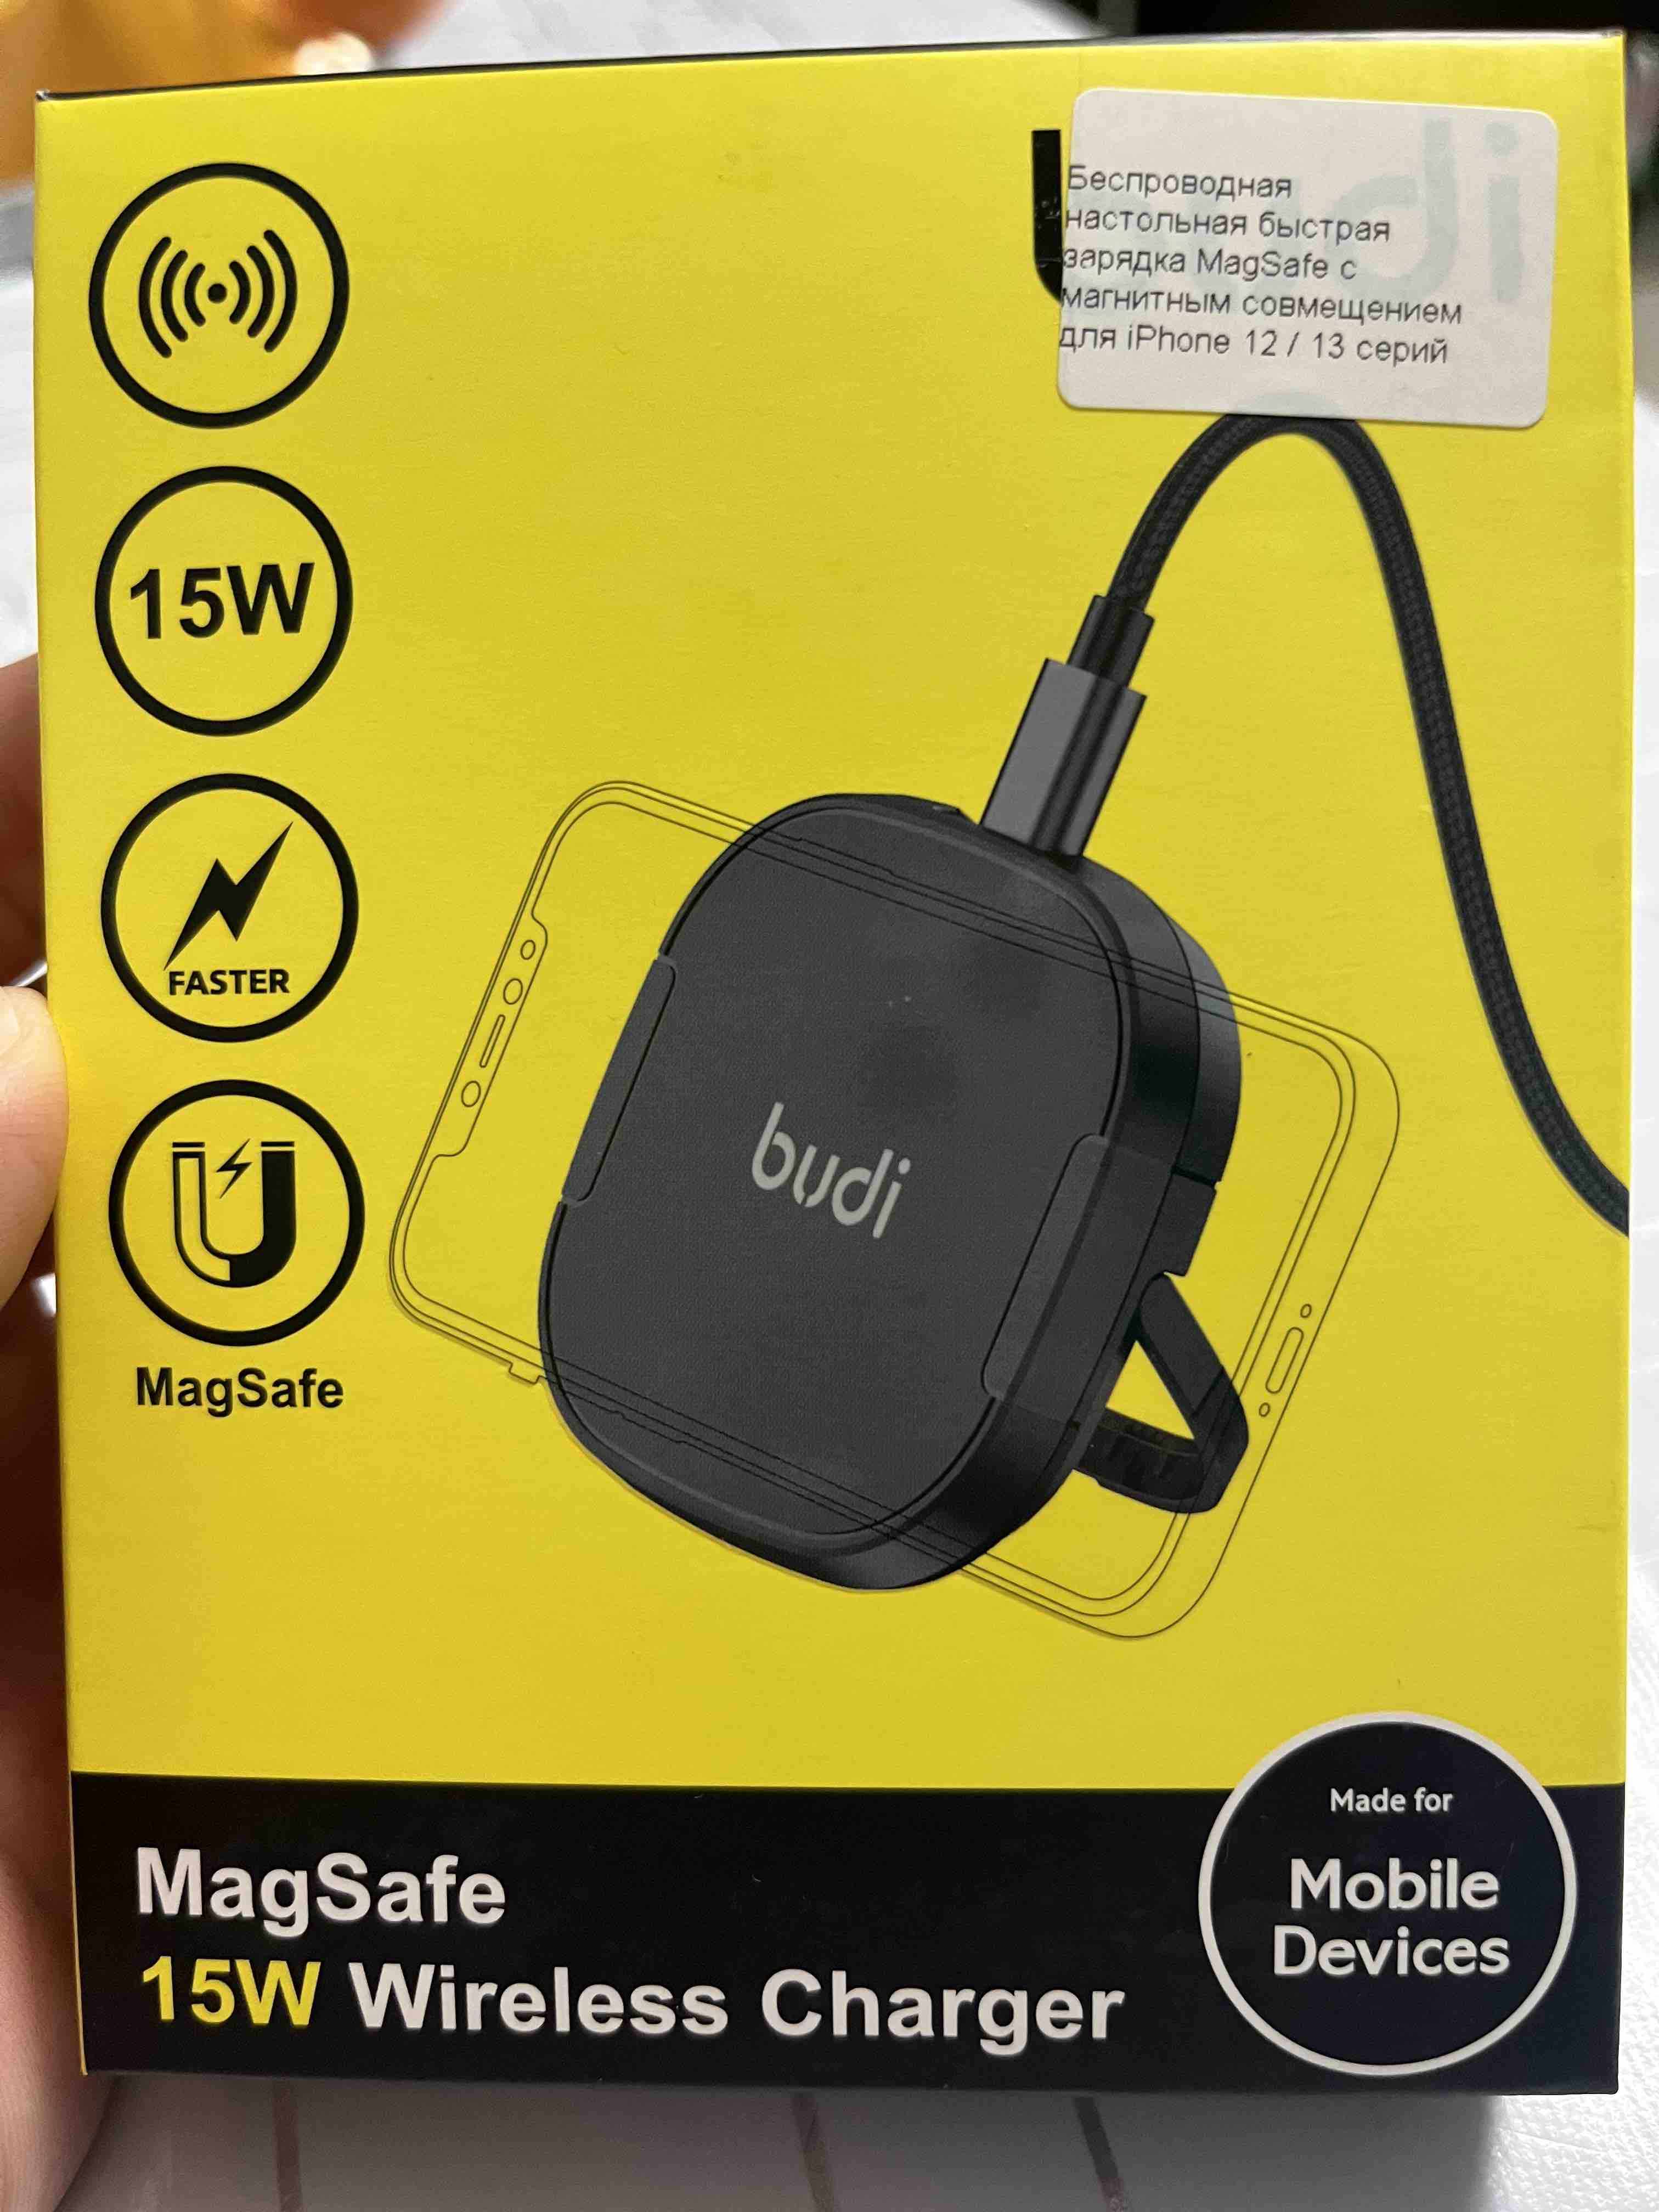 Беспроводная настольная магнитная зарядка MagSafe для iPhone 12 - 15 серий,  купить в Москве, цены в интернет-магазинах на Мегамаркет